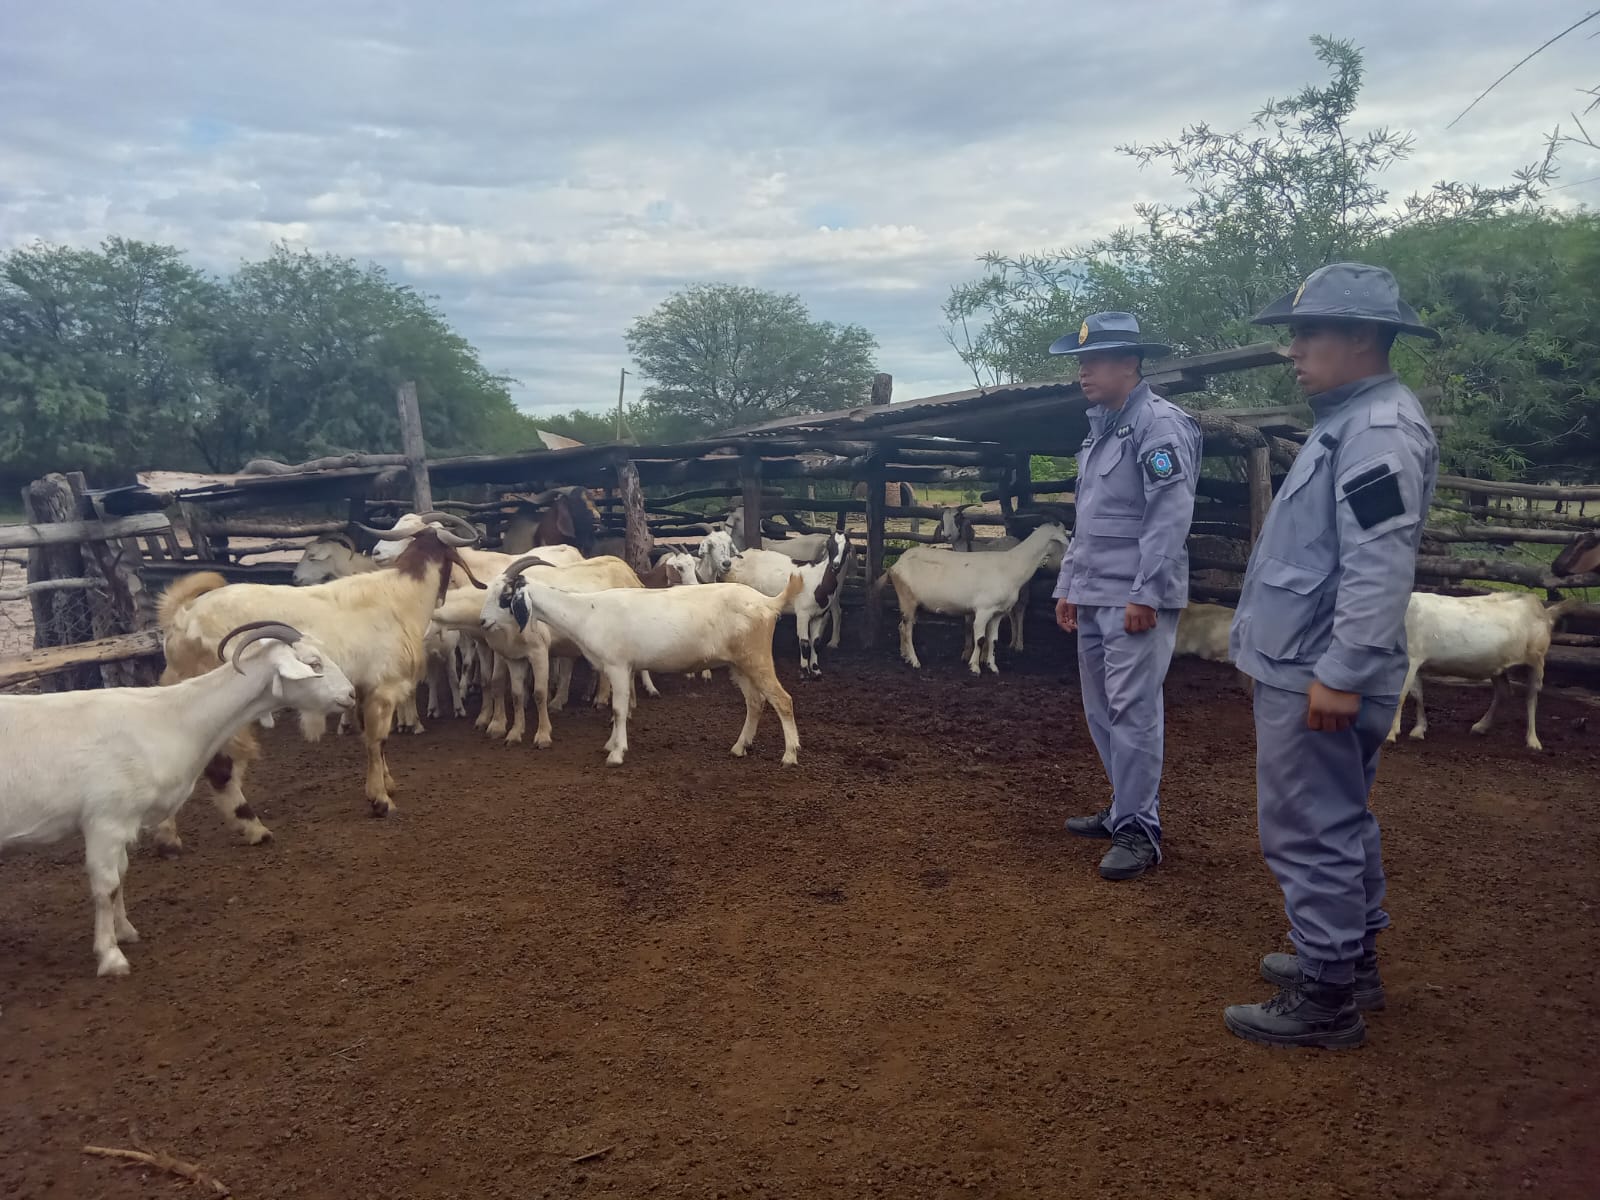 Se habían robado 26 cabras y las abandonaron en un campo: cuando las encontraron estaban deshidratadas y hambrientas